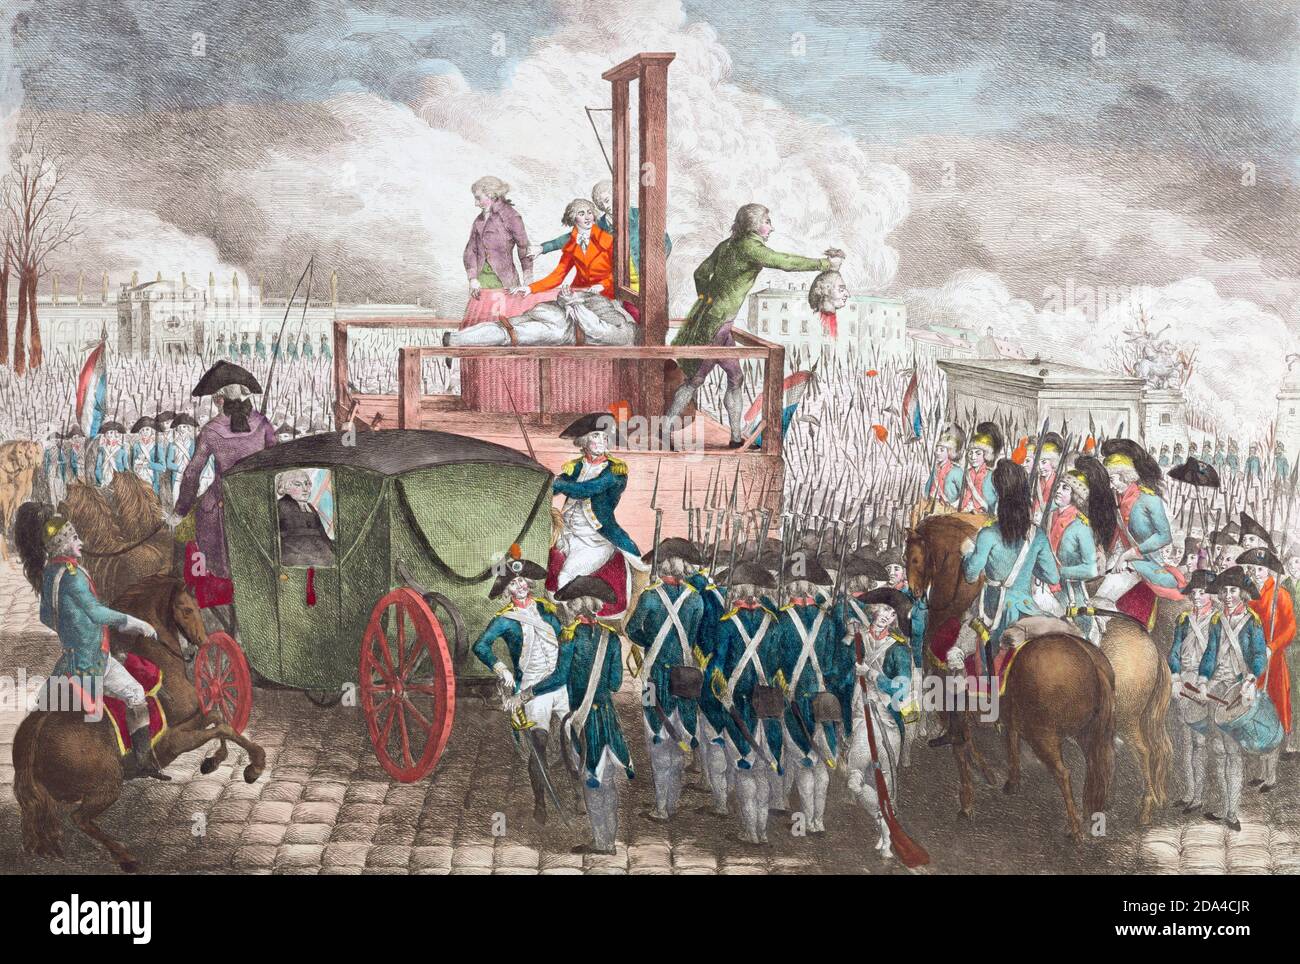 L’exécution par guillotine sur la place de la Concorde à Paris le 21 janvier 1793 du roi de France Louis XVI pendant la Révolution française. Après une impression couleur à la main du milieu des années 1790. Banque D'Images